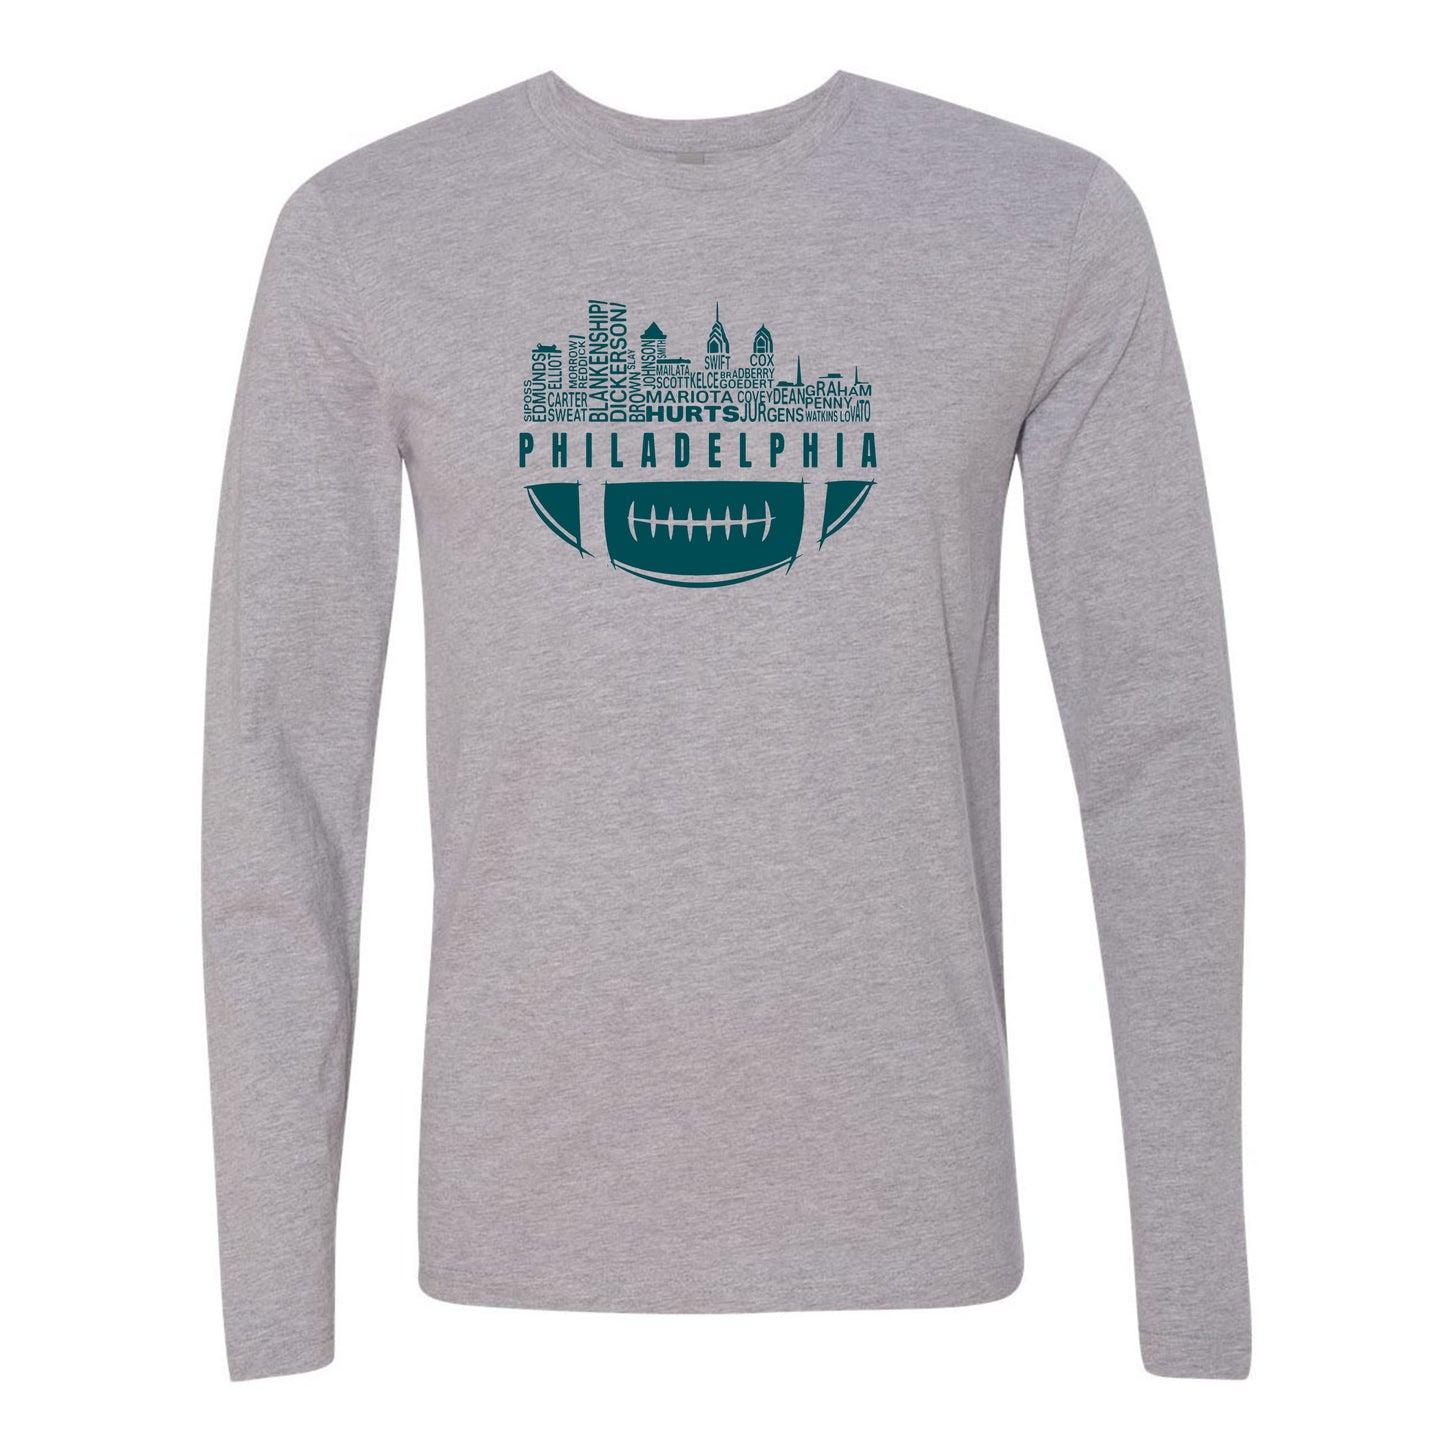 Philadelphia City Skyline Men's Shirt for Football Fans